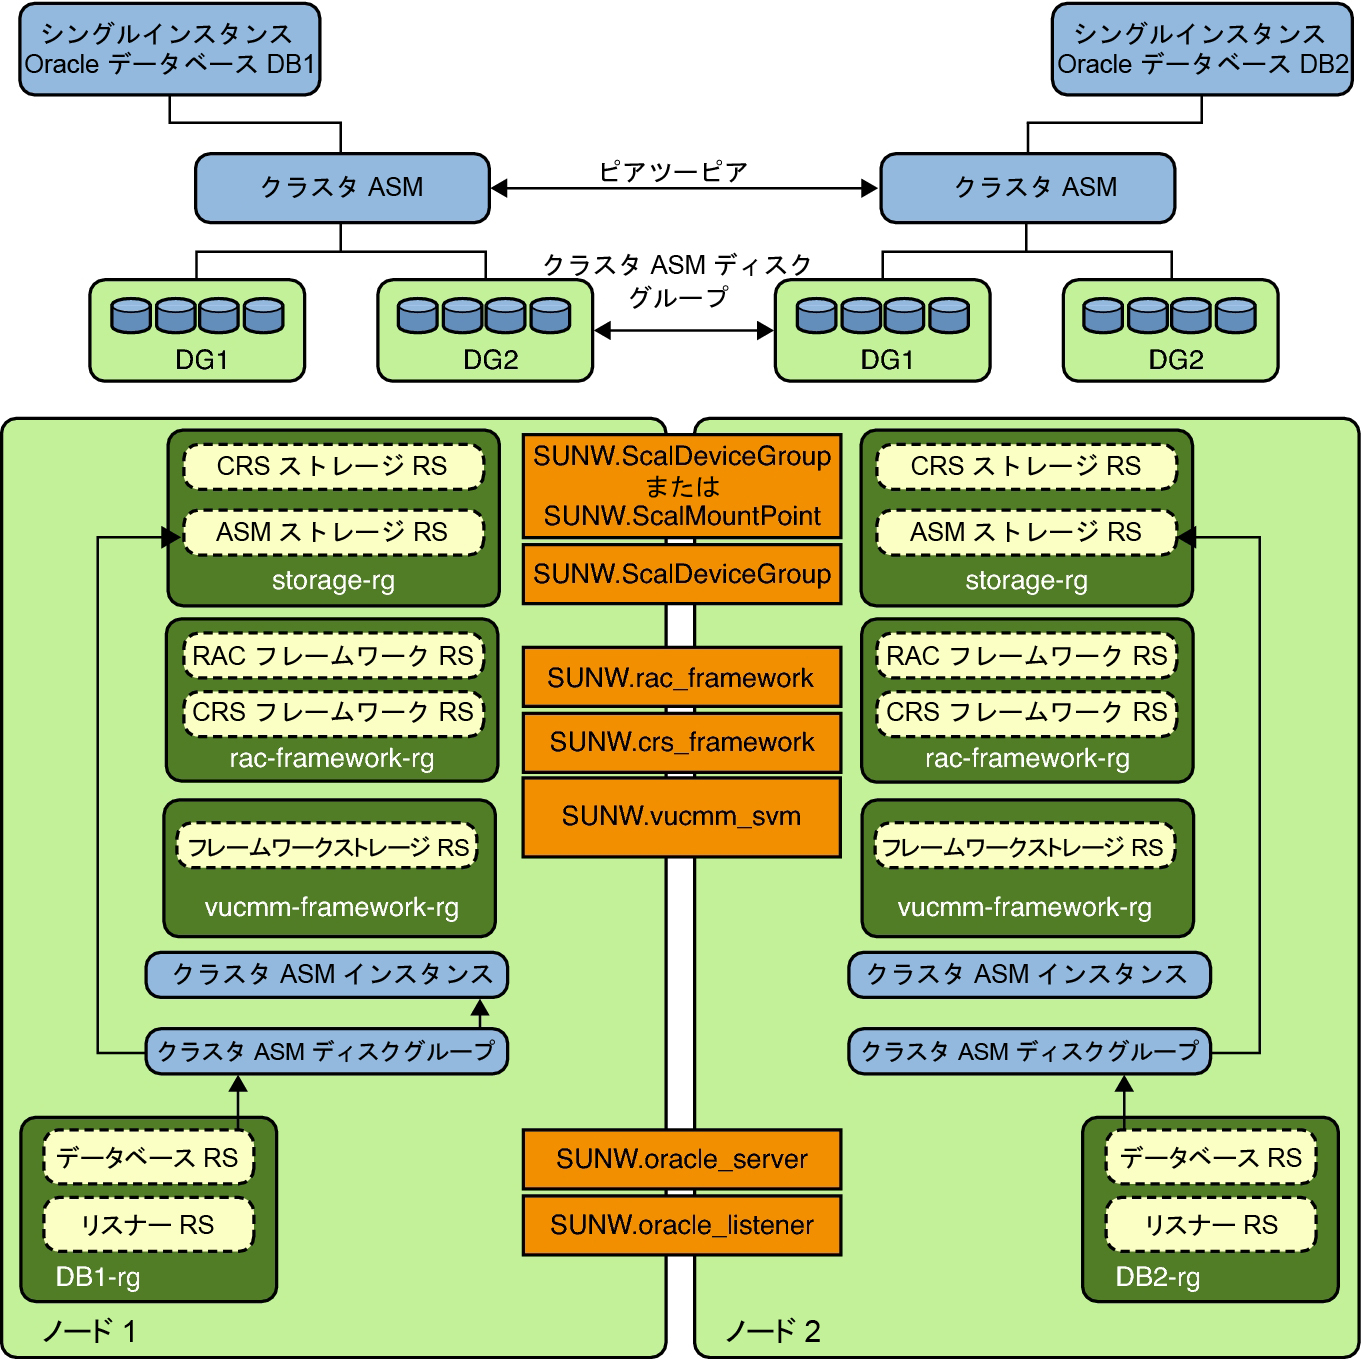 image:クラスタディスクグループ 2 を持つ Oracle ASM を示す図